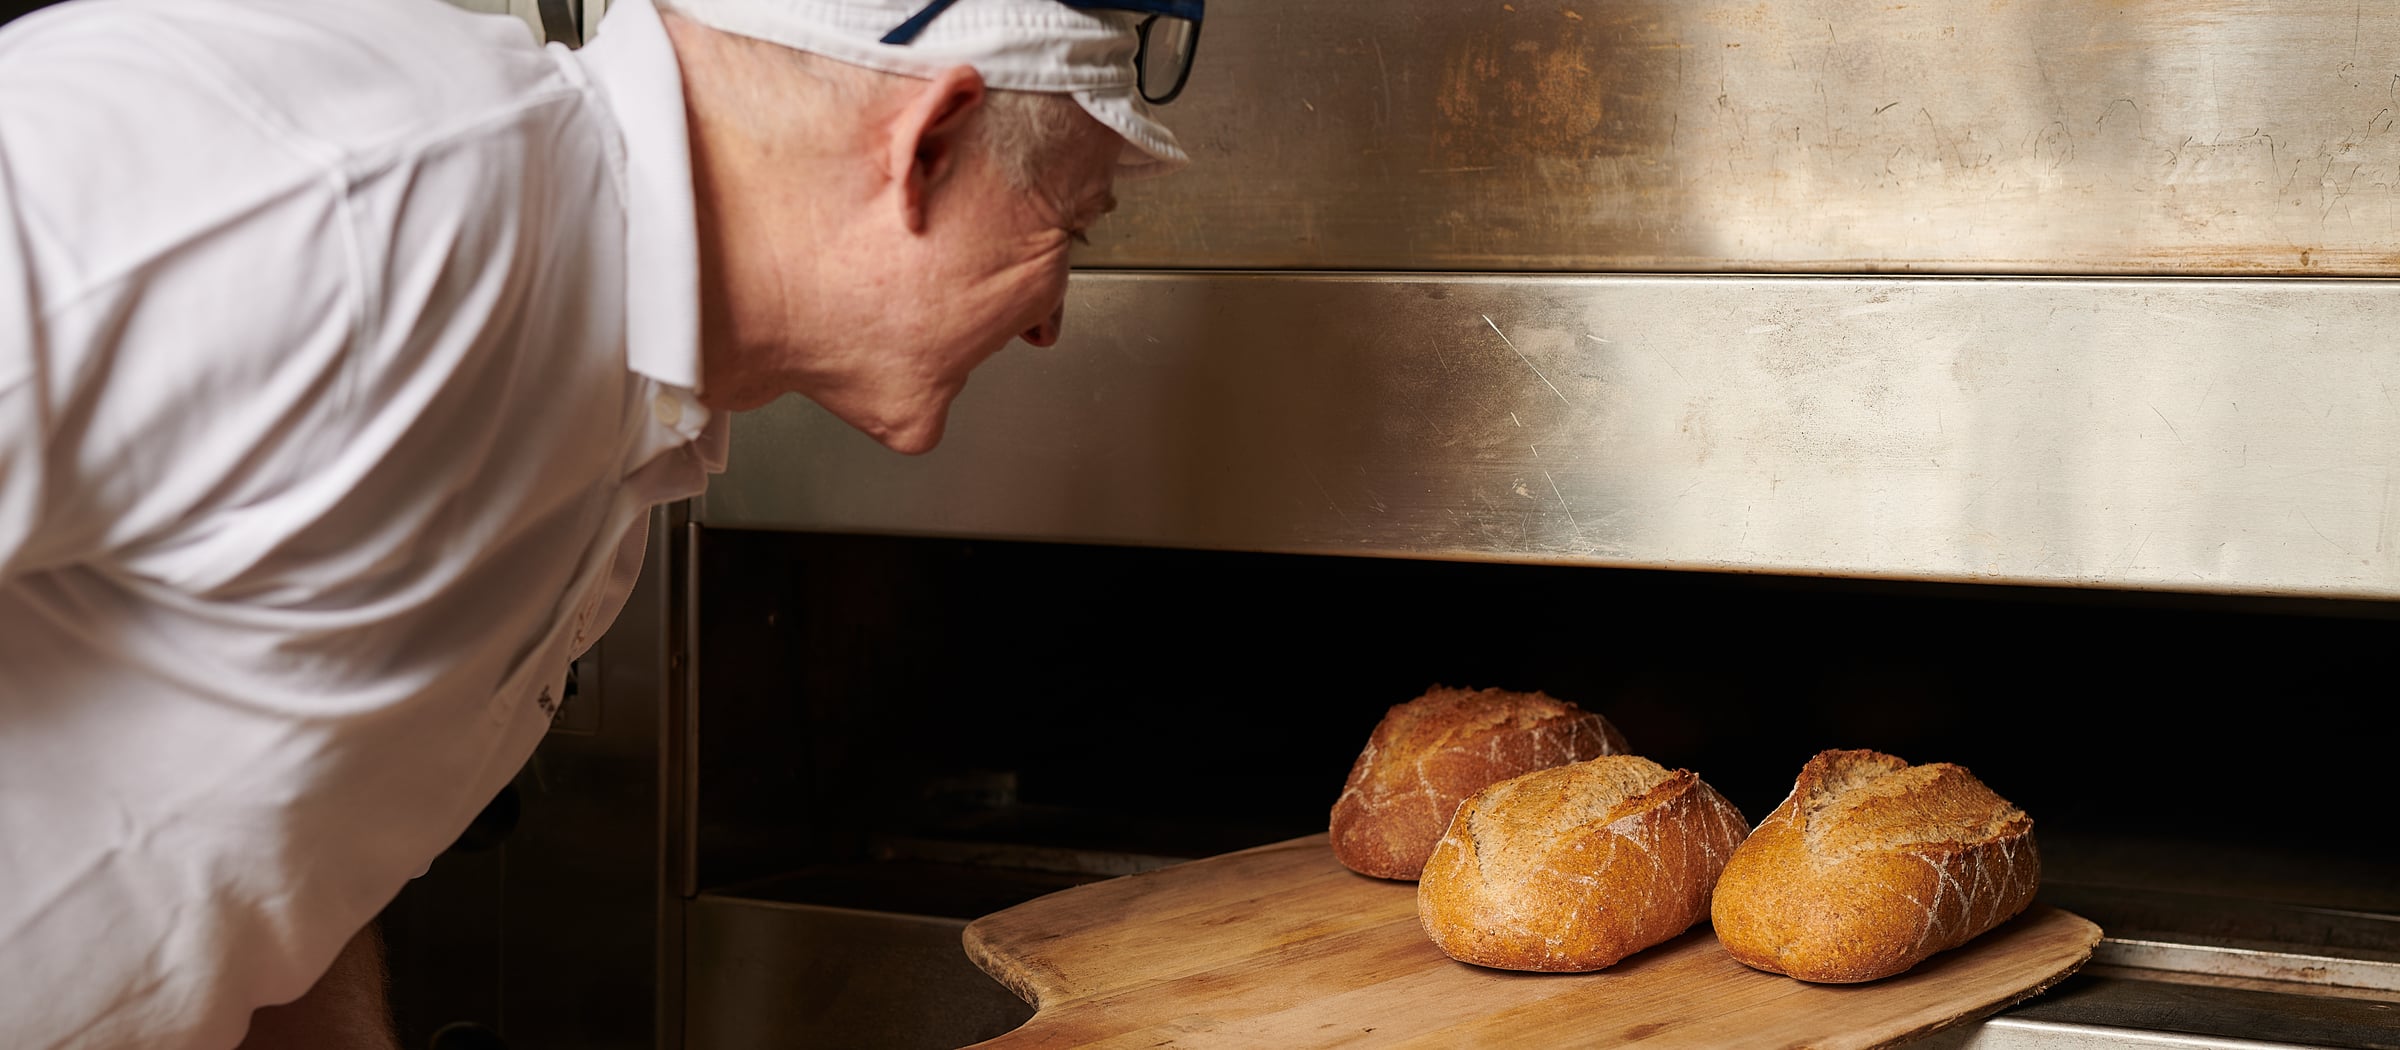 Tschifeler Brot Beck Ab in den Ofen